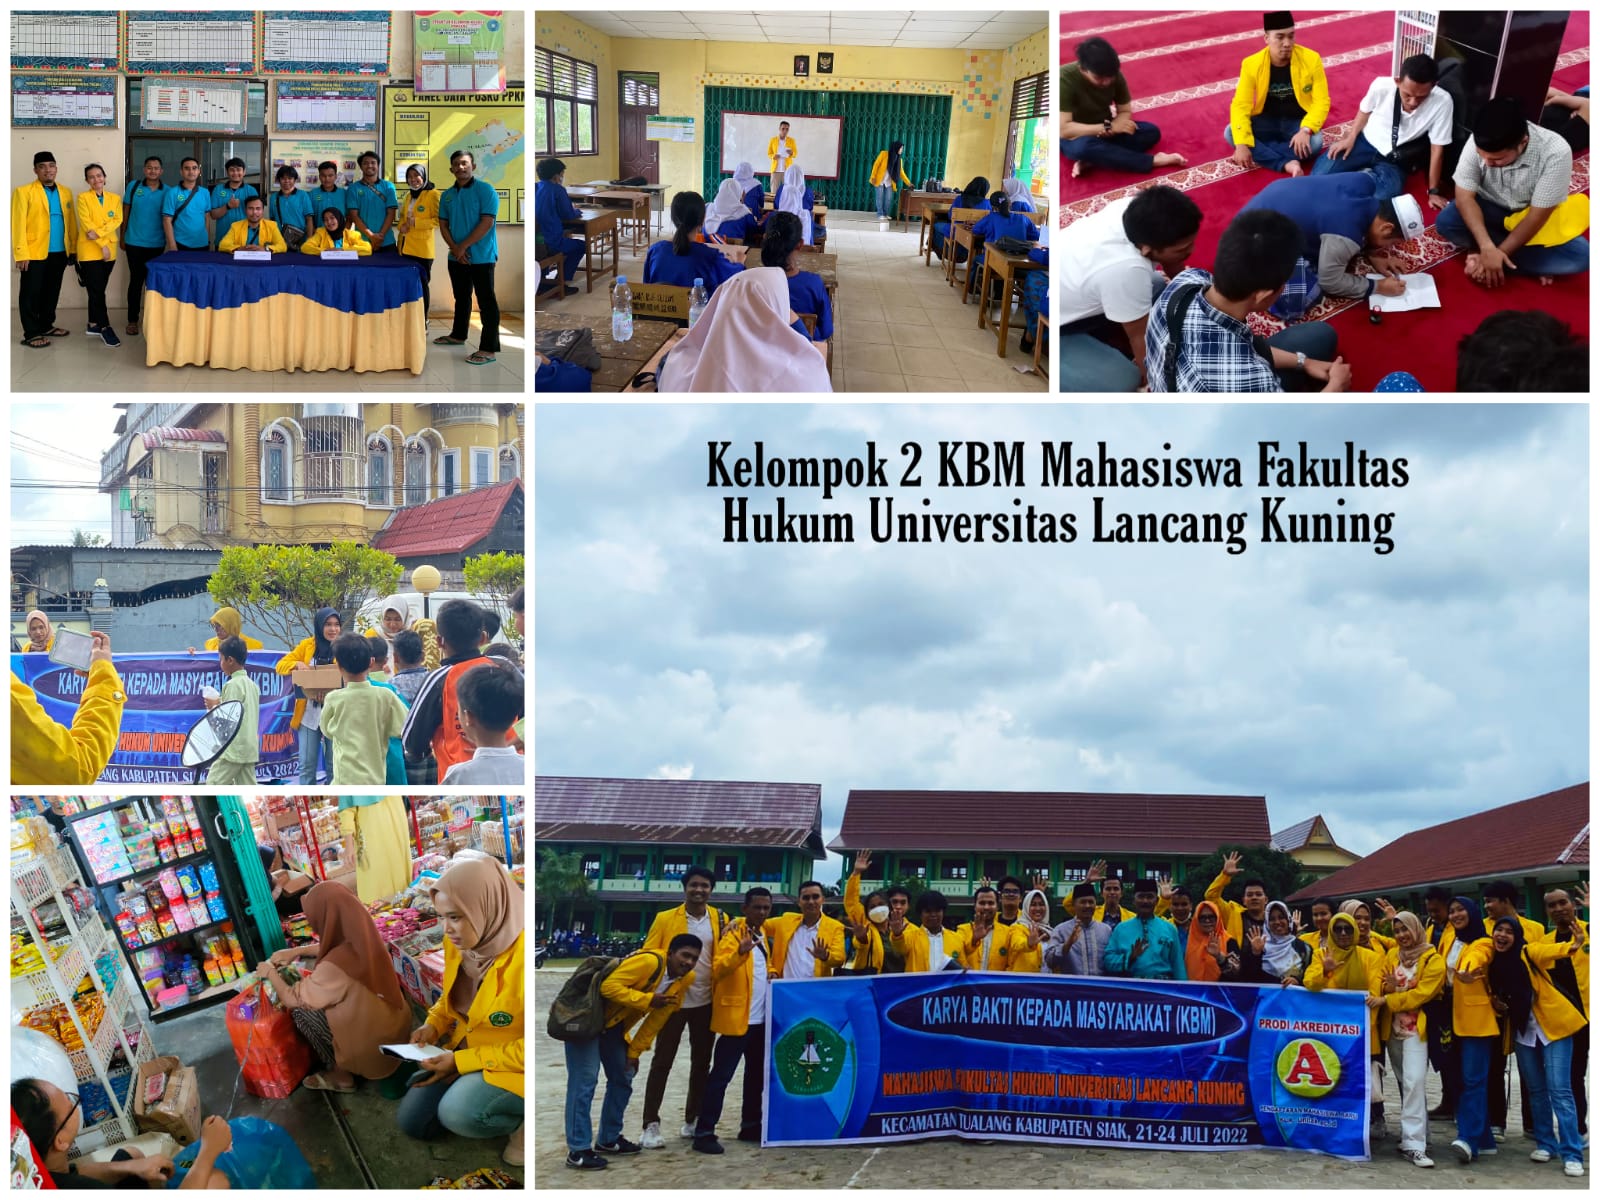 Kelompok 2 KBM Mahasiswa Fakultas Hukum Universitas Lancang Kuning Menyapa Kecamatan Tualang